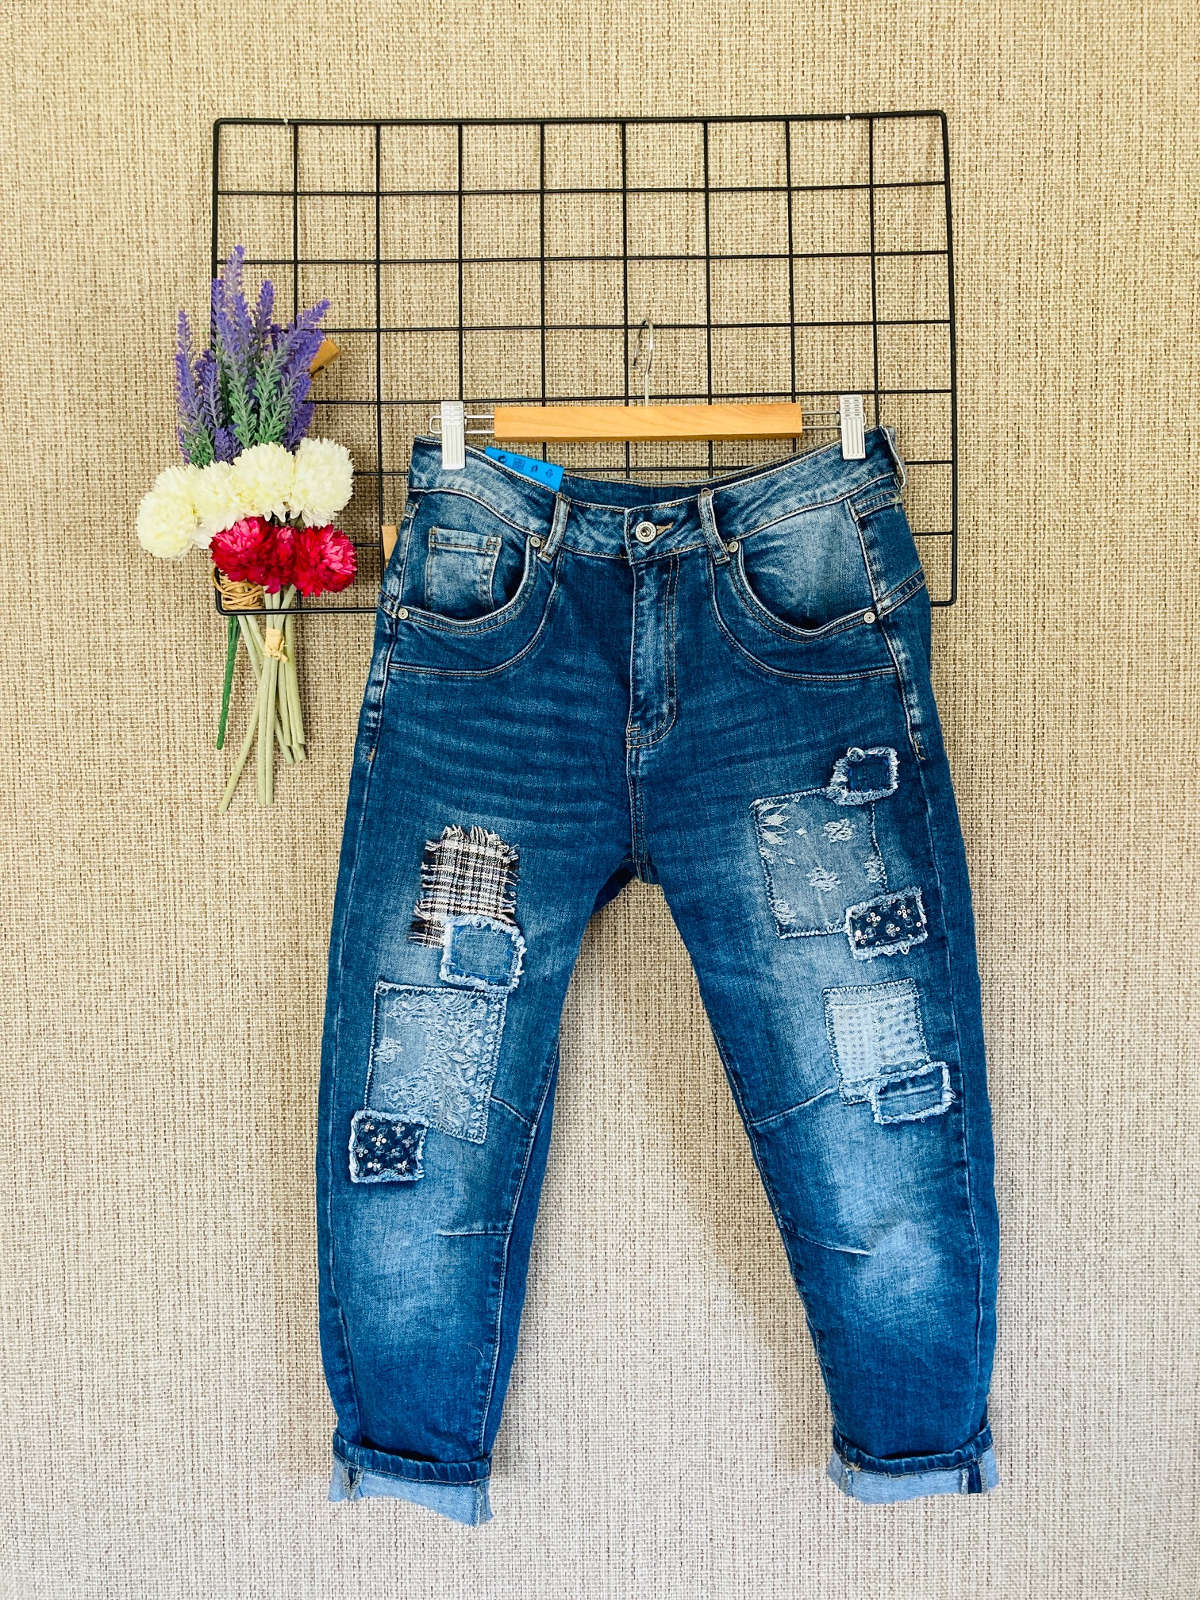 Jeans ausgefallener Stil Niederbayern 